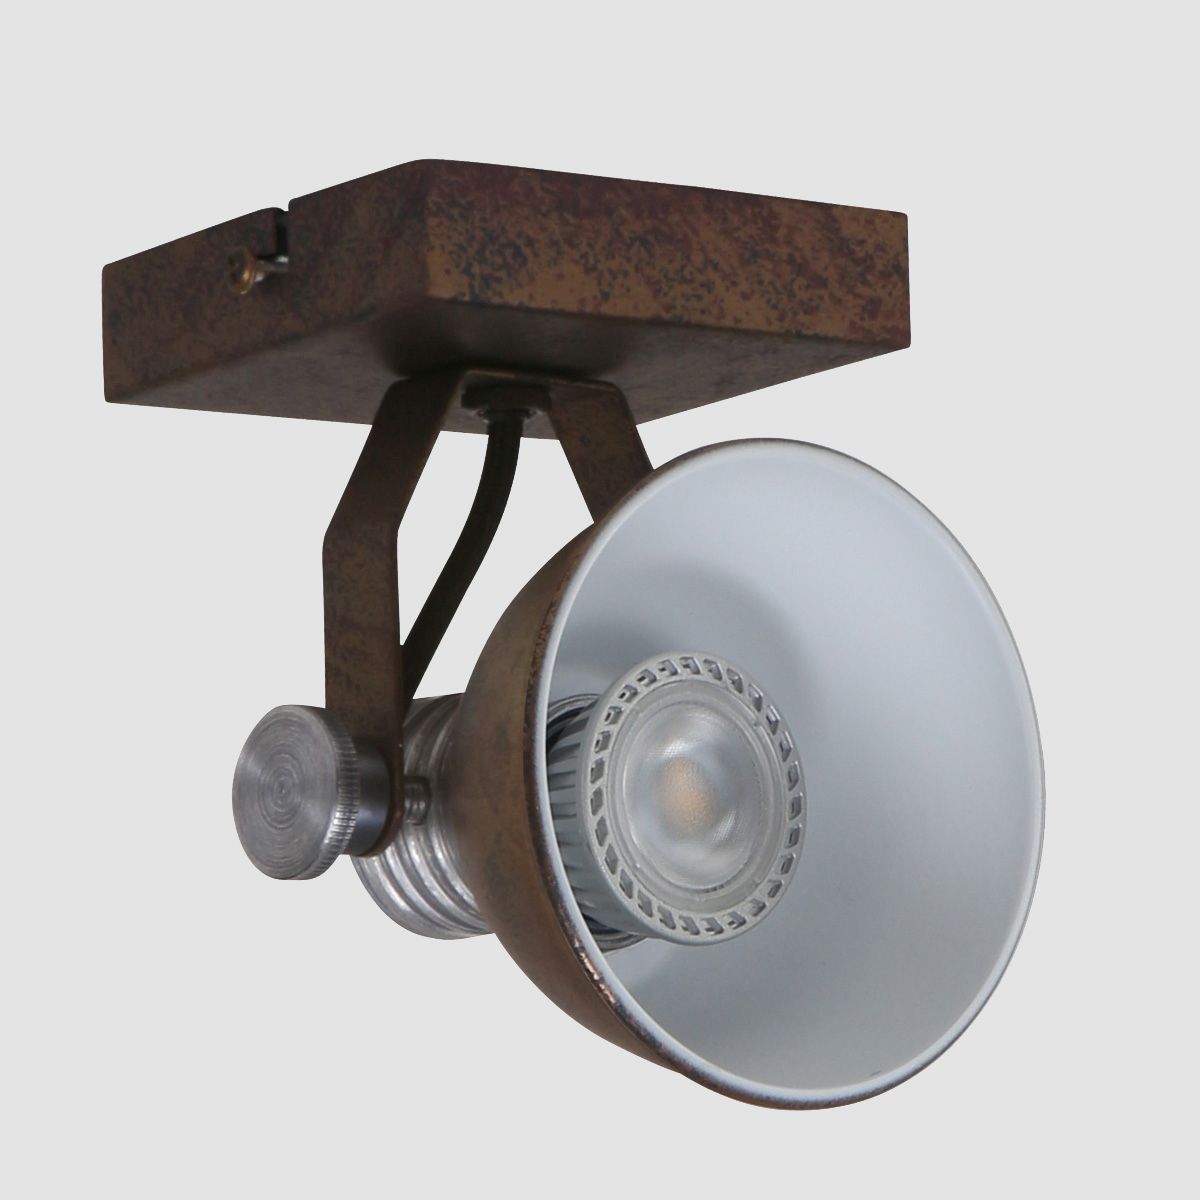 Curtis - spotlampe i metal, 3 forskellige finish Metal - brun